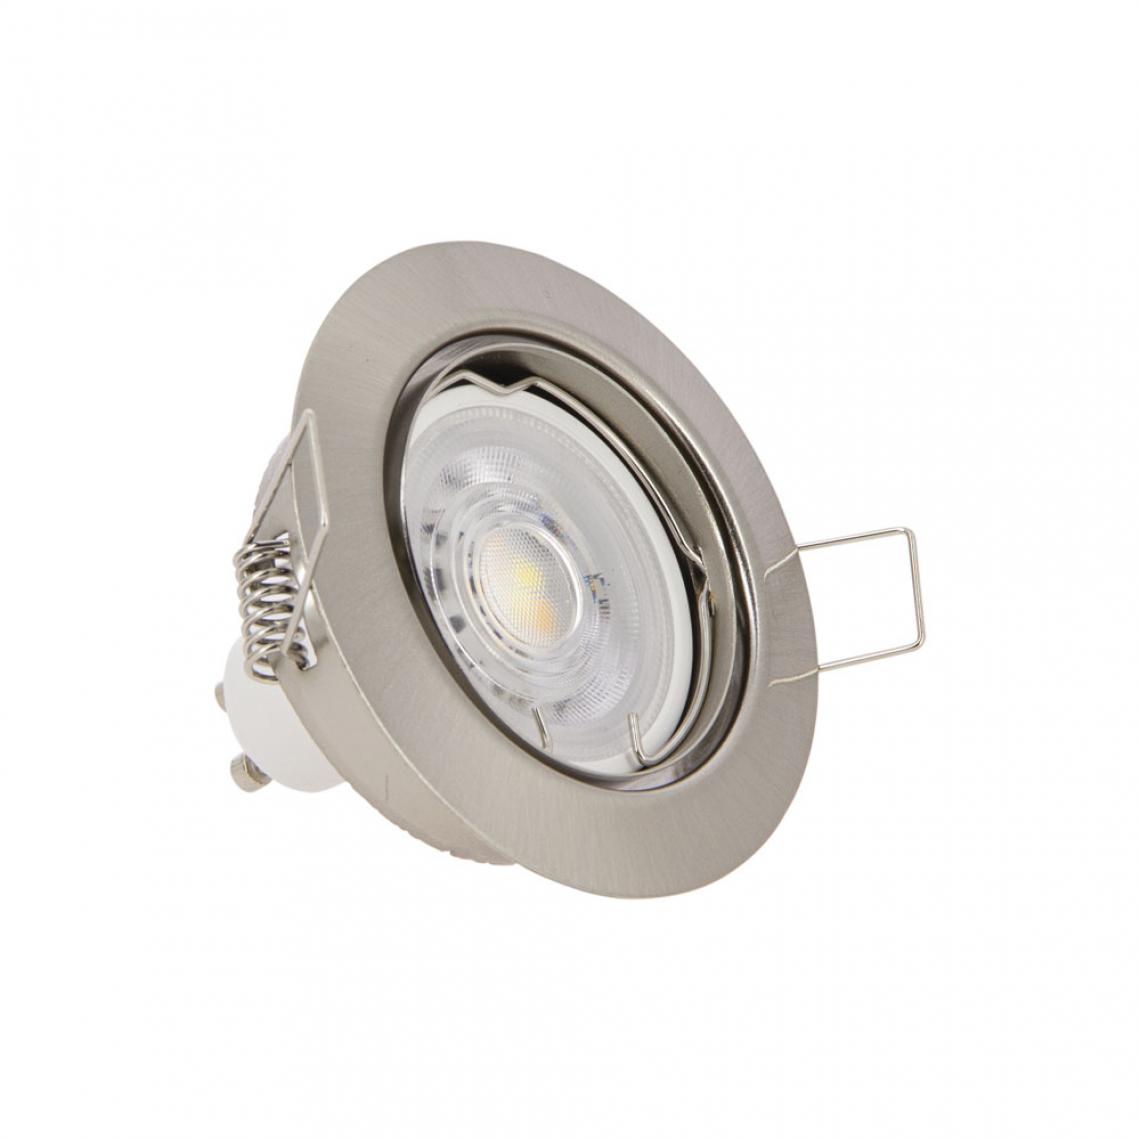 Xanlite - Ampoule LED connectée GU10 Spot encastrable aluminium brossé orientable 5W - Lampe connectée